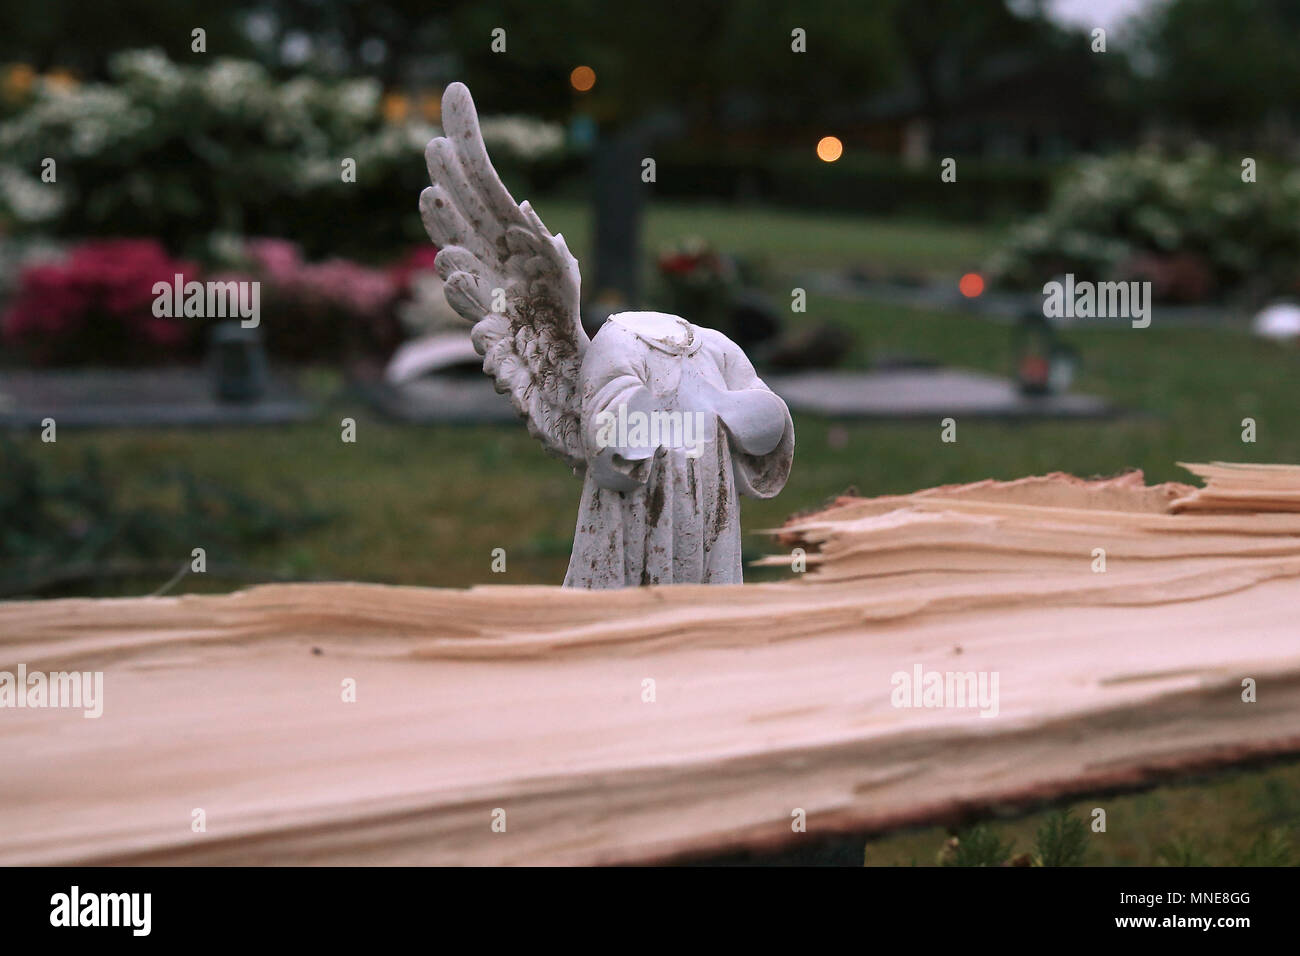 16 maggio 2018, Germania, Schwalmtal: un albero caduto che giace accanto a un distrutto figura di angelo ina giardino. Il tornado ha, secondo le autorità, un 'causarono un percorso di distruzione'. Almeno una persona è stata gravemente ferito dalla tempesta. Foto: David Giovani/dpa Foto Stock